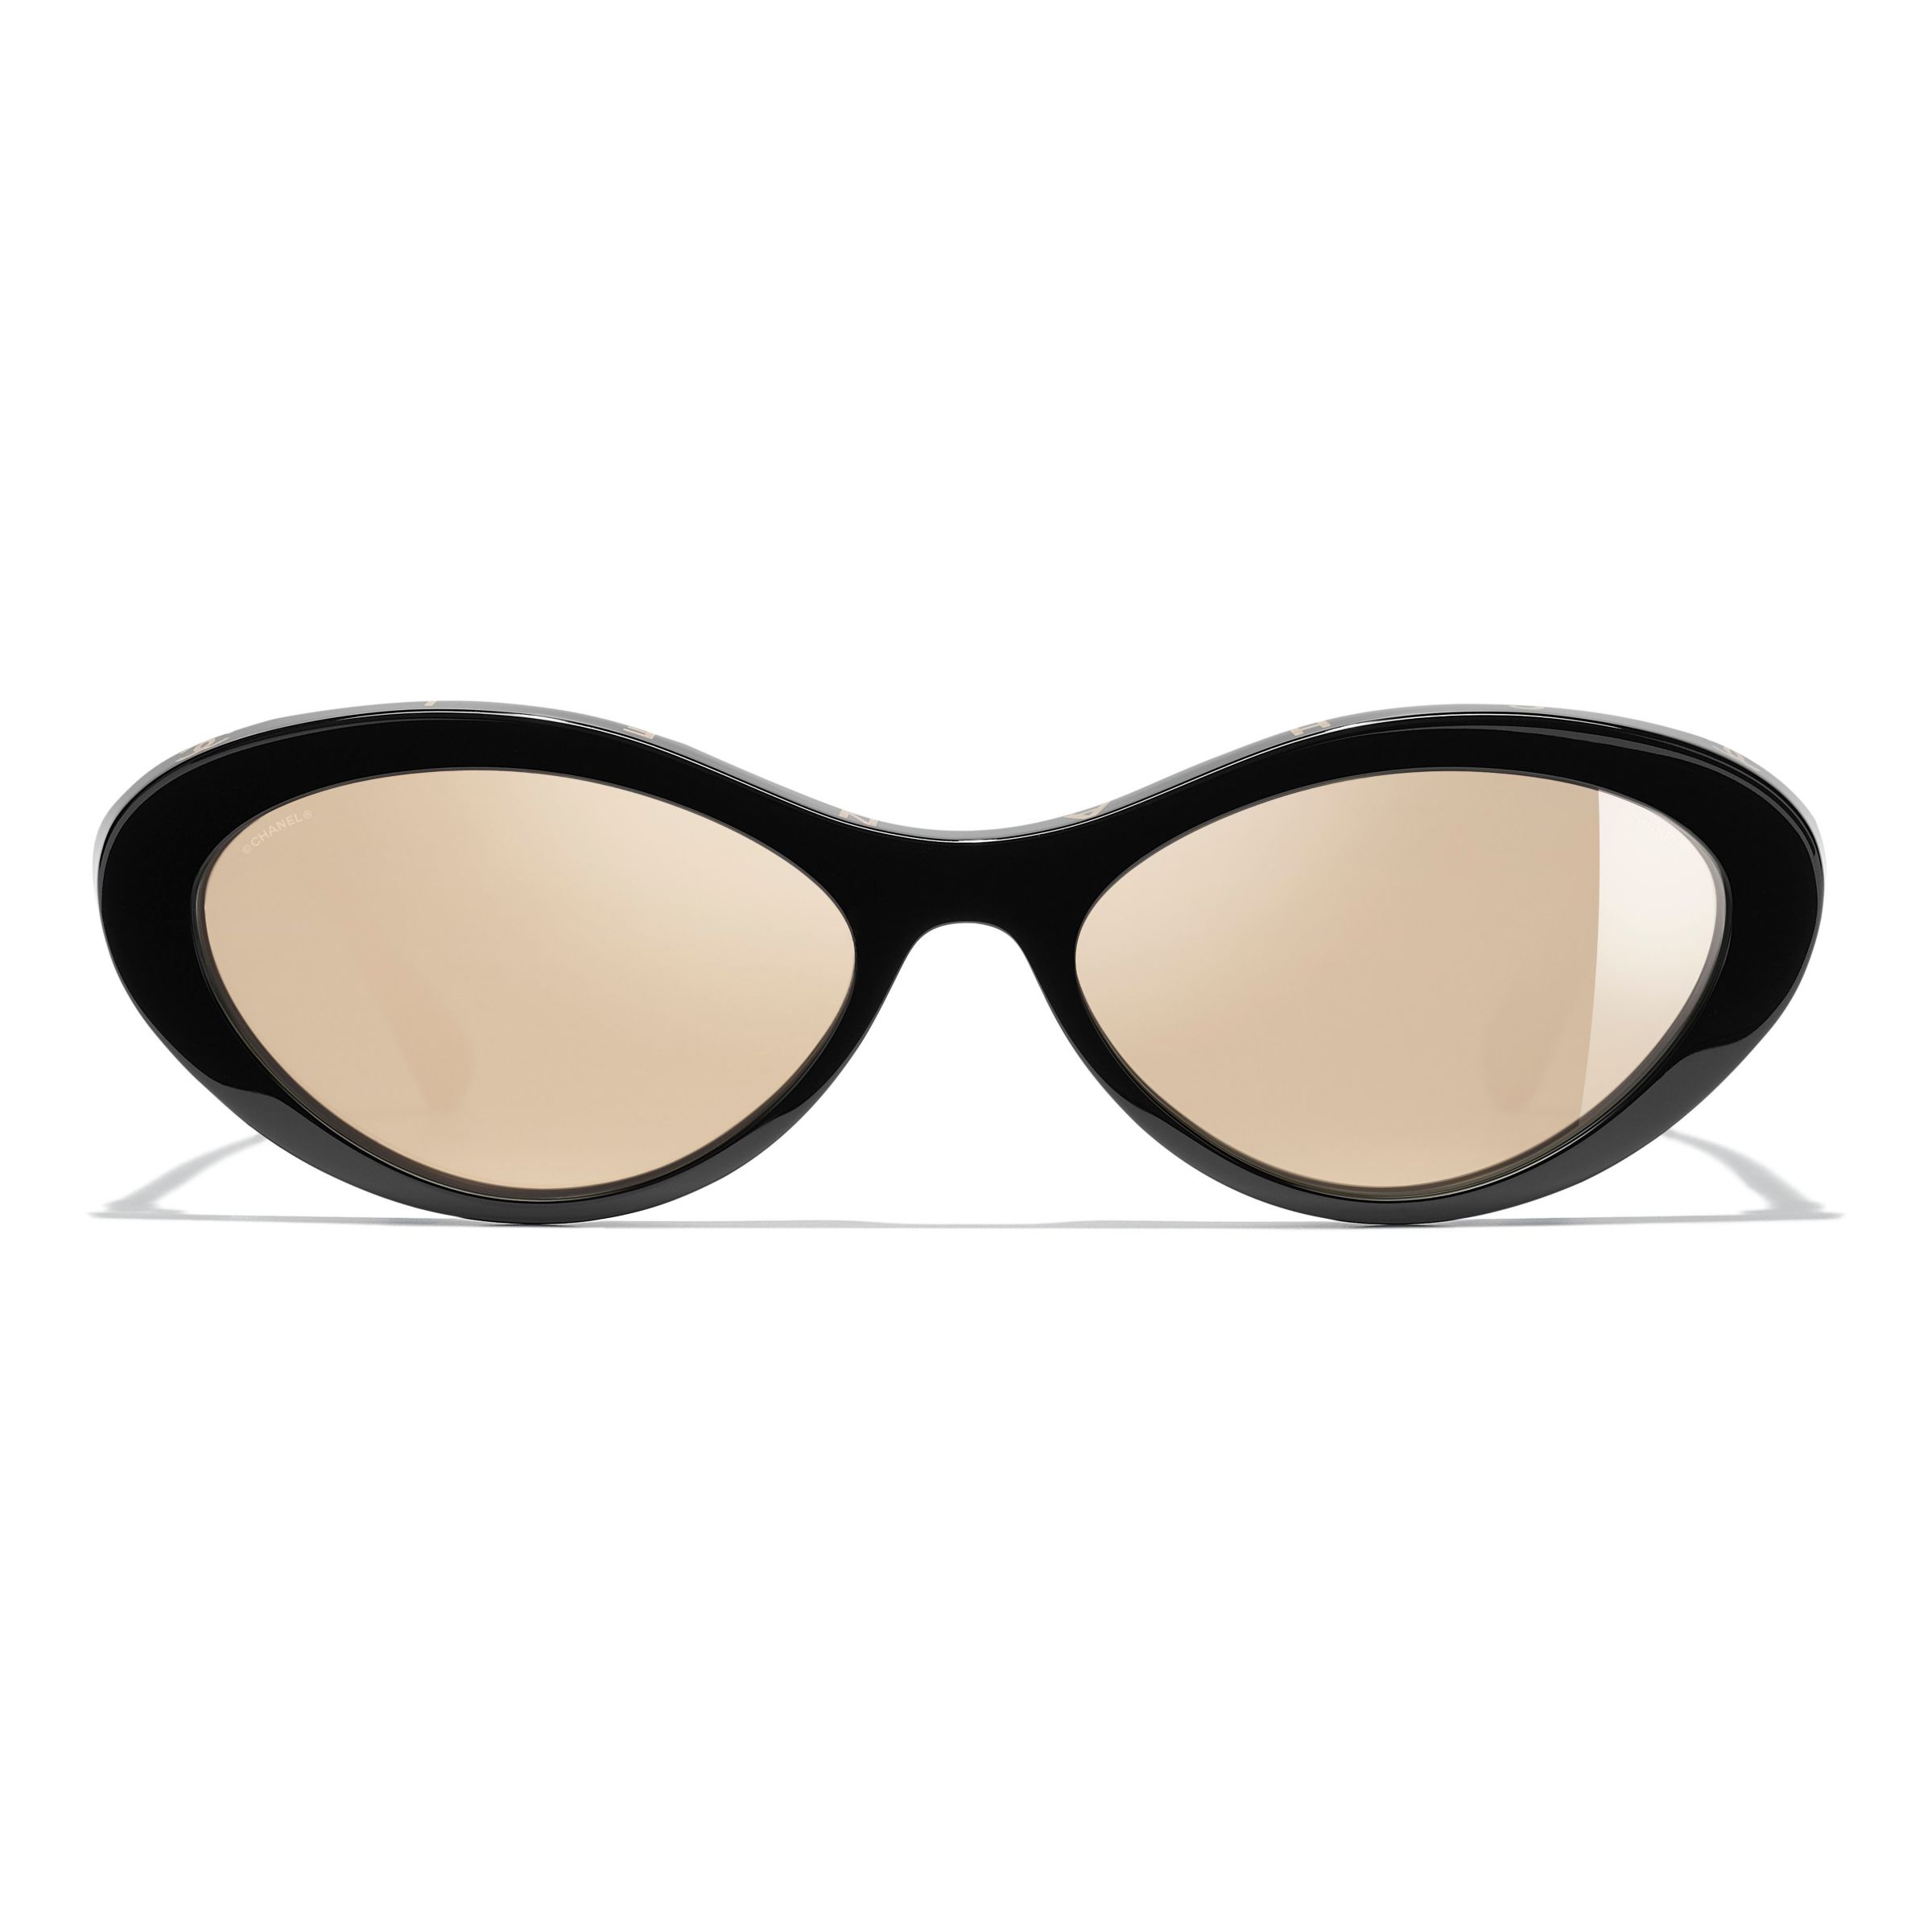 Sunglasses: Oval Sunglasses, Acetate Imitation Pearls — Fashion